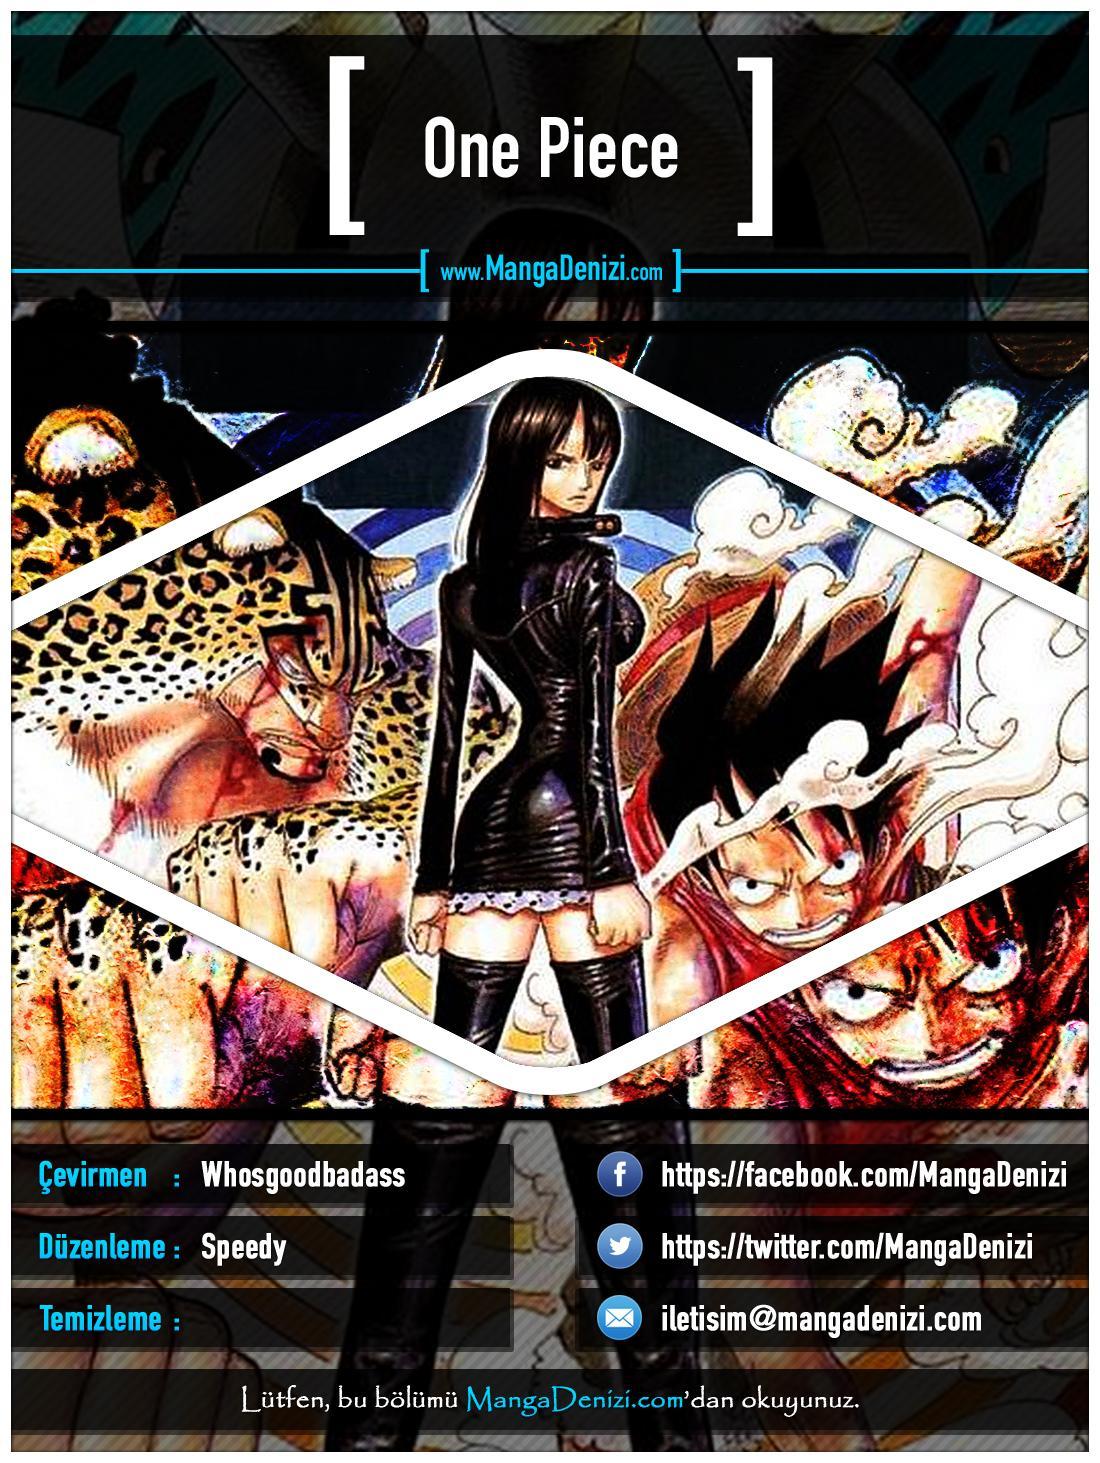 One Piece [Renkli] mangasının 0334 bölümünün 1. sayfasını okuyorsunuz.